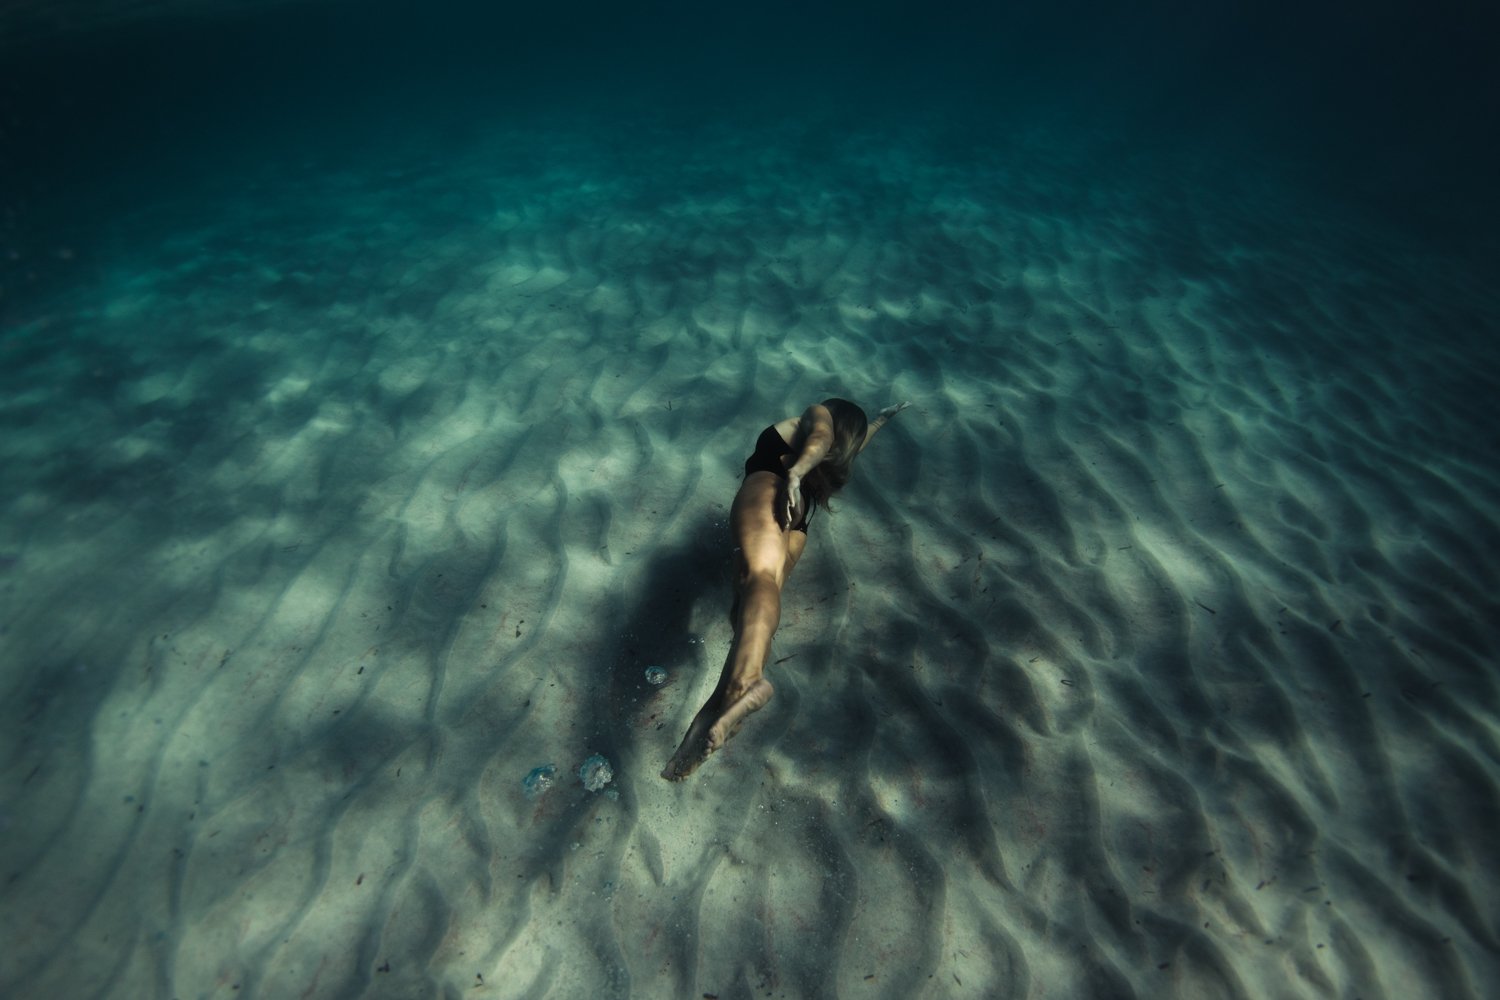 summer underwater corse corsica sea mediterranean island france french photographer photographe ajaccio Krista Espino Capo di feno wave femme woman fine art photography swim-24.jpg